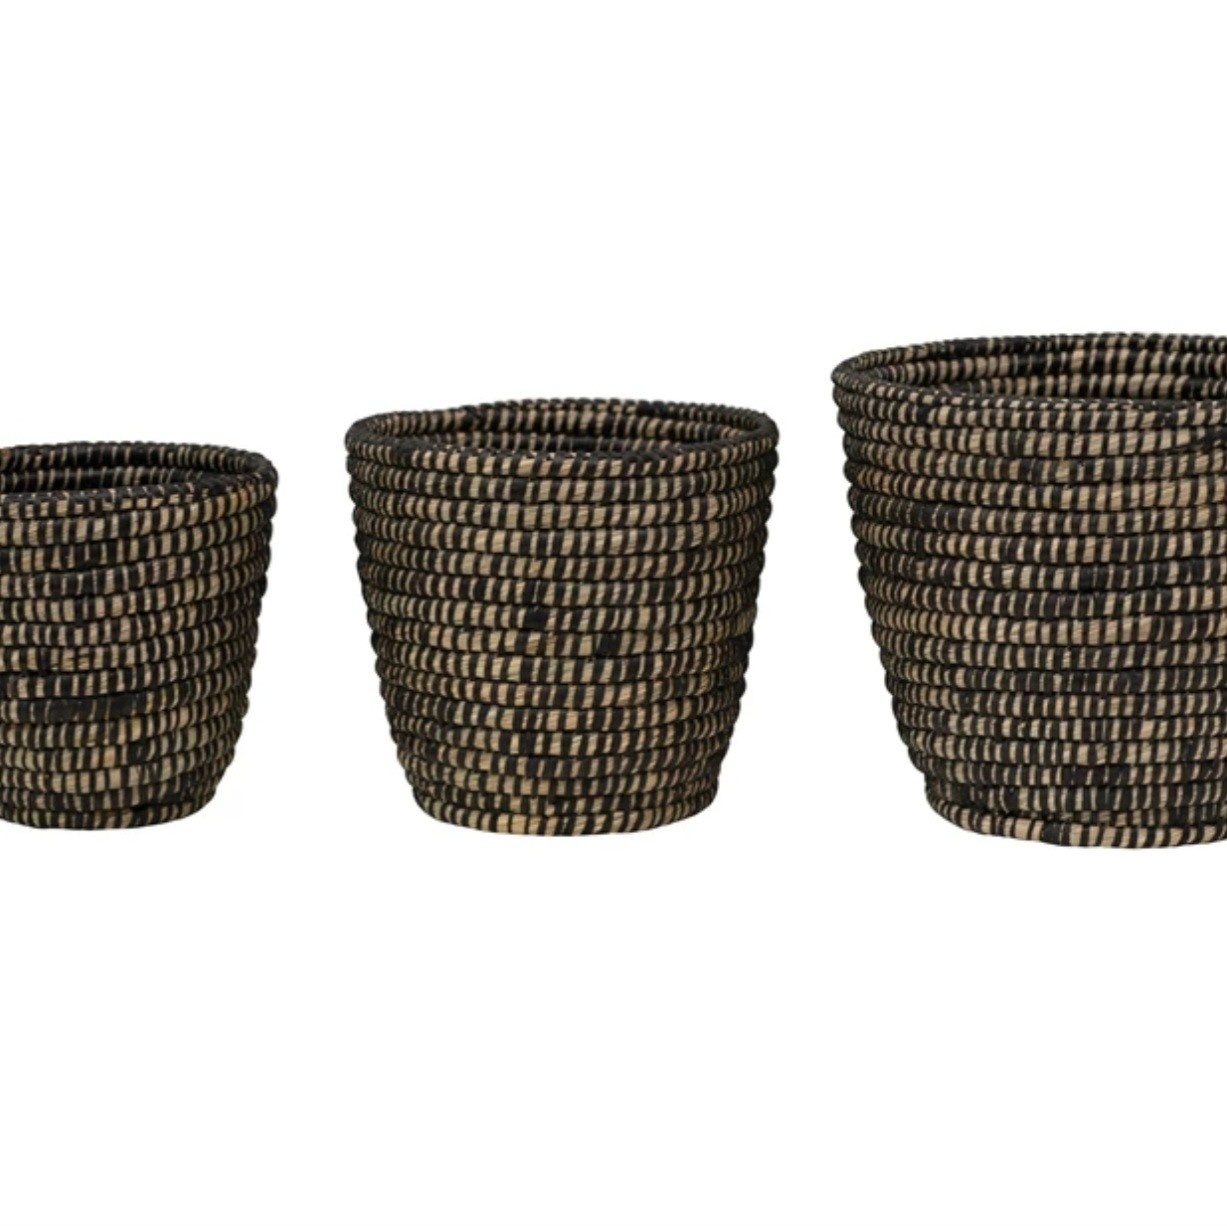 Hand-Woven Grass Basket MD, Black 9.75" Round x 9" & 7.75"